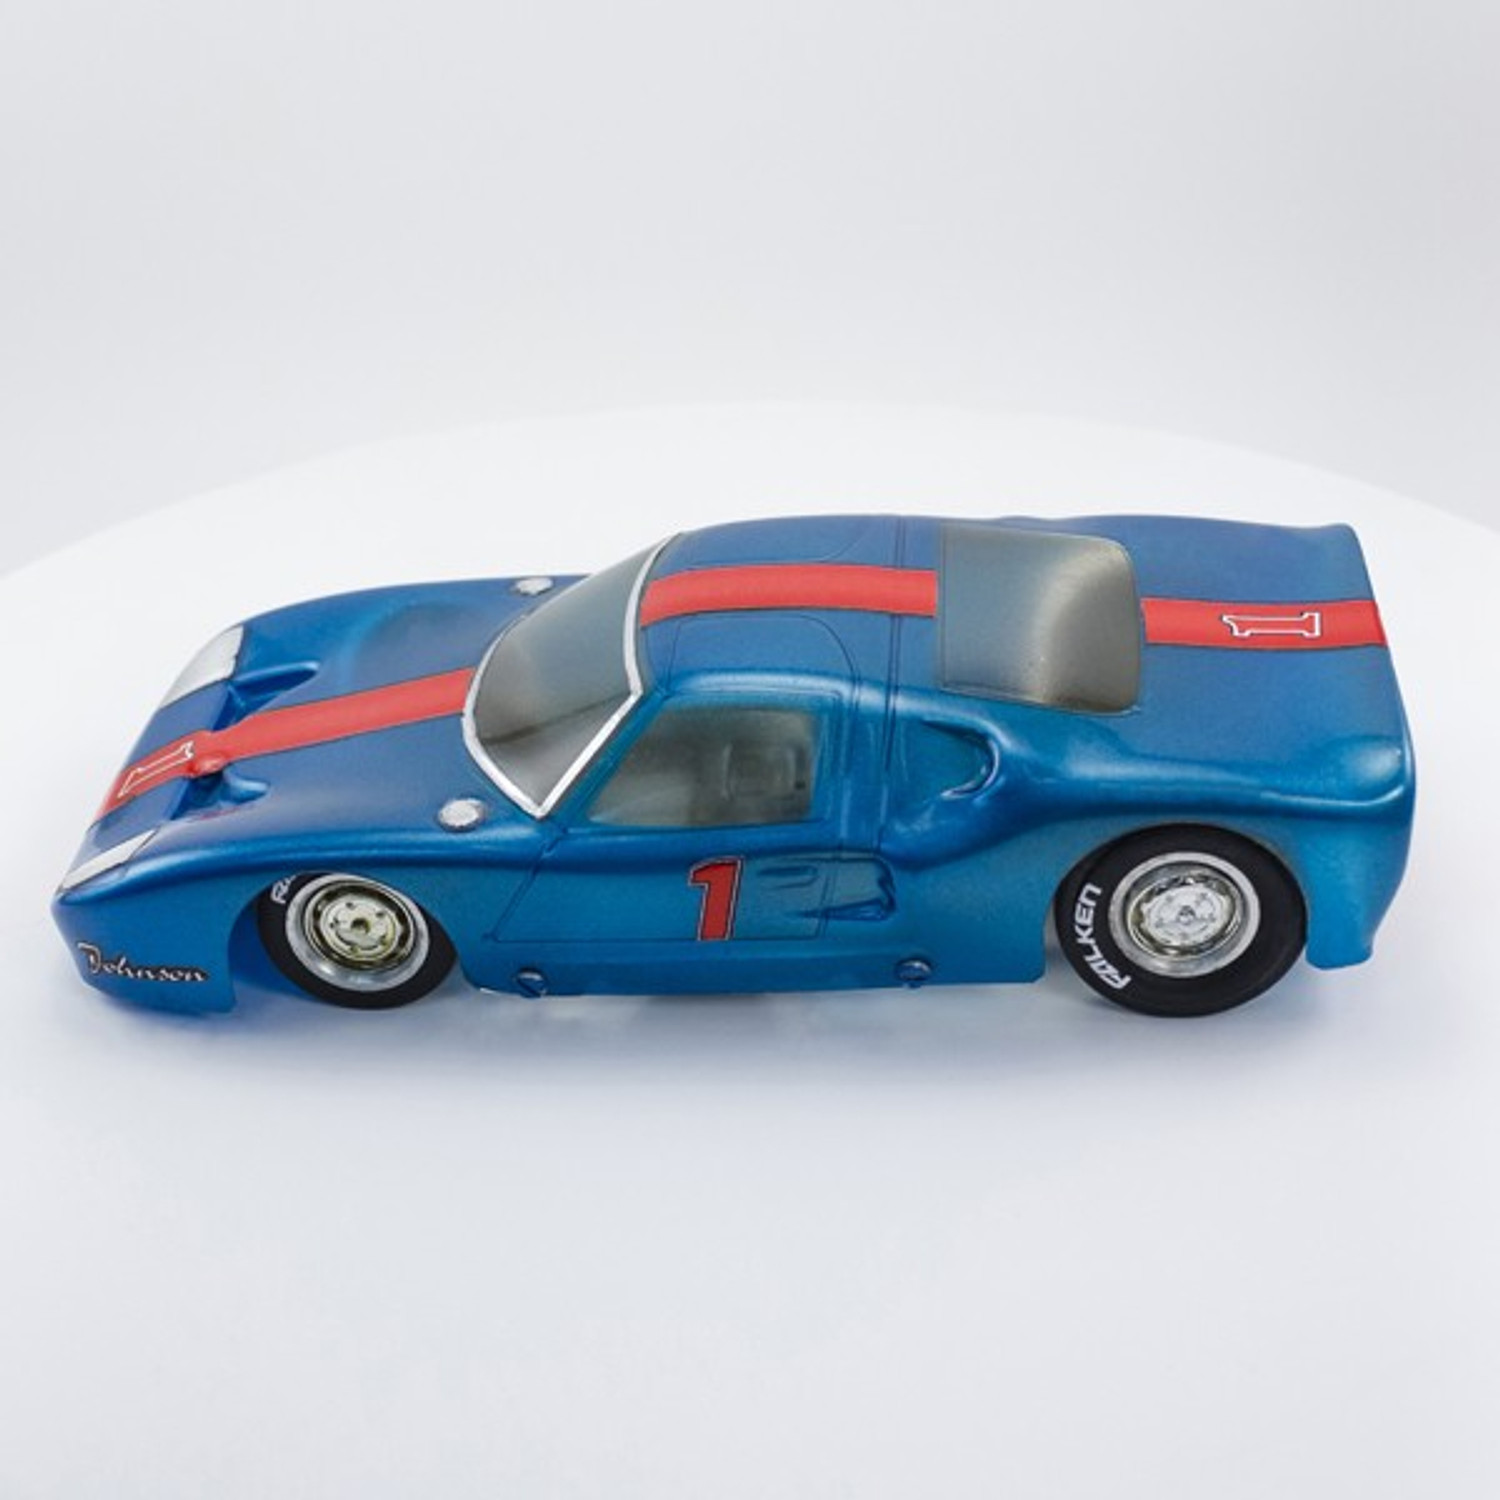 Stock Number: 16128 Blue Ferrari by Eldon